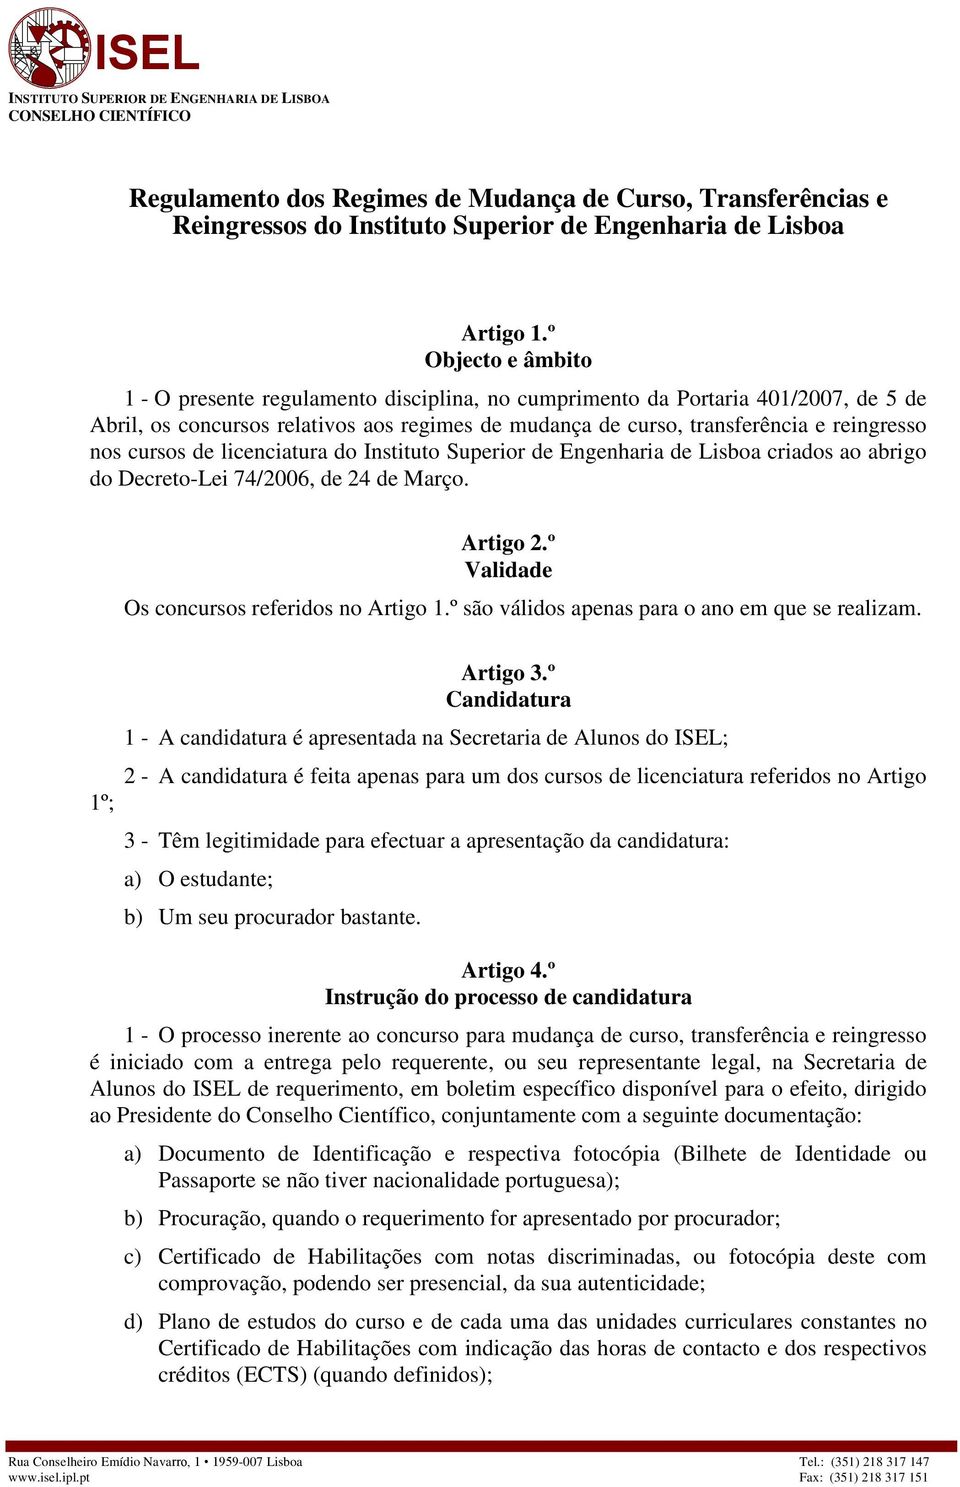 cursos de licenciatura do Instituto Superior de Engenharia de Lisboa criados ao abrigo do Decreto-Lei 74/2006, de 24 de Março. Artigo 2.º Validade Os concursos referidos no Artigo 1.